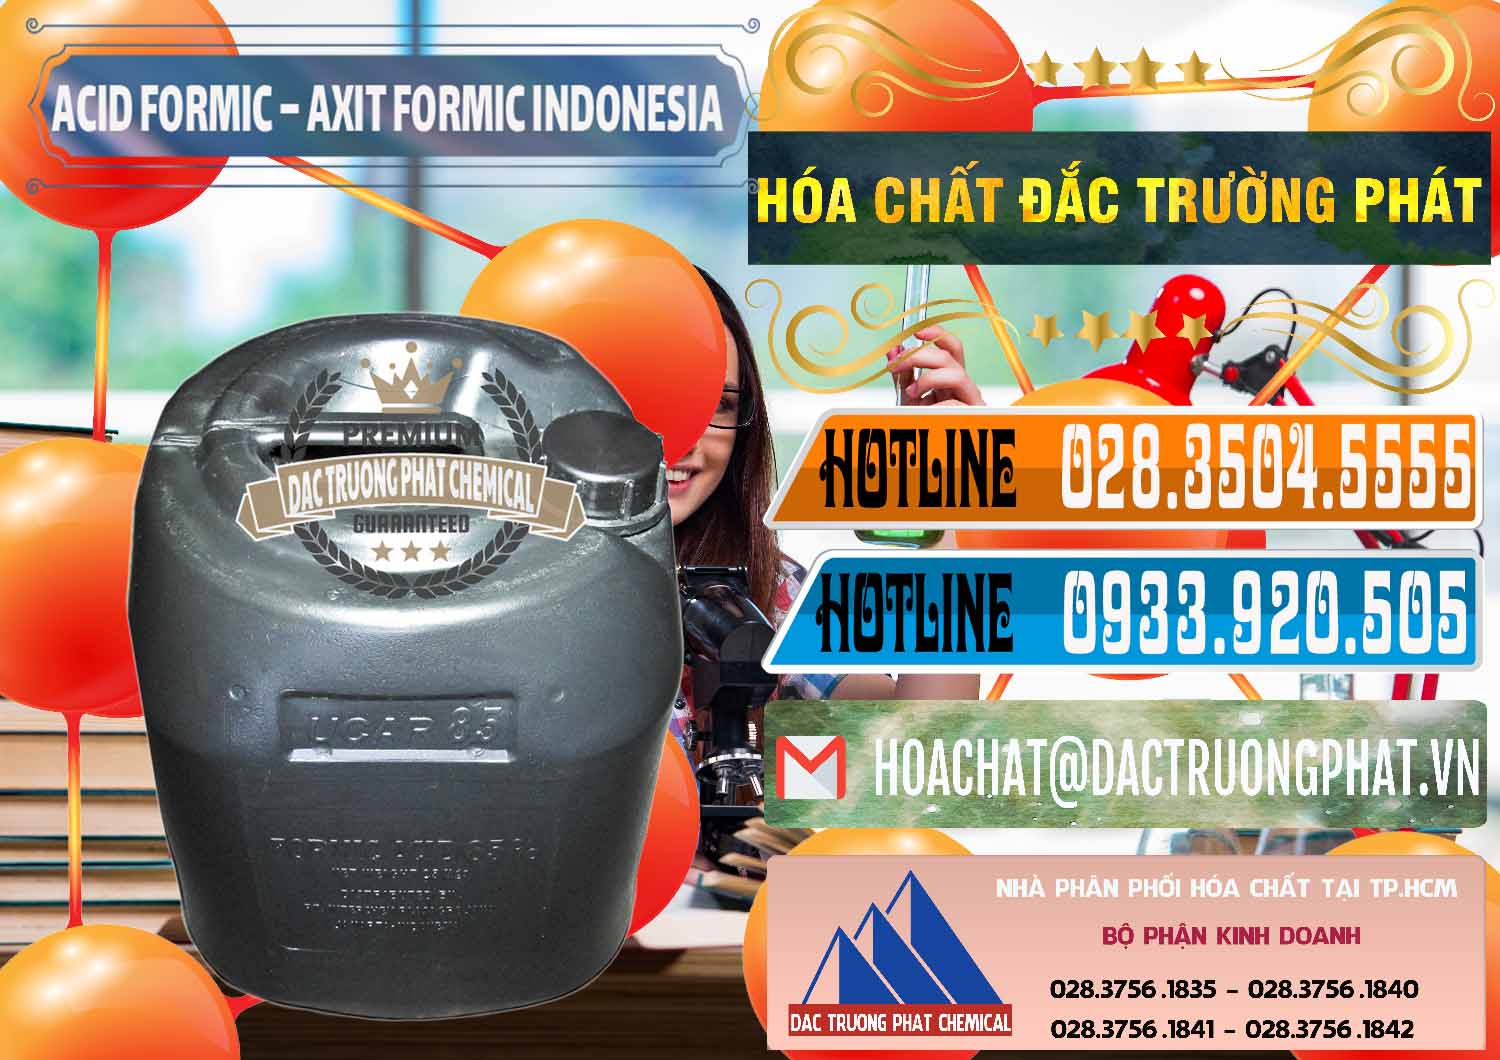 Cty chuyên kinh doanh _ bán Acid Formic - Axit Formic Indonesia - 0026 - Nhà phân phối và bán hóa chất tại TP.HCM - stmp.net